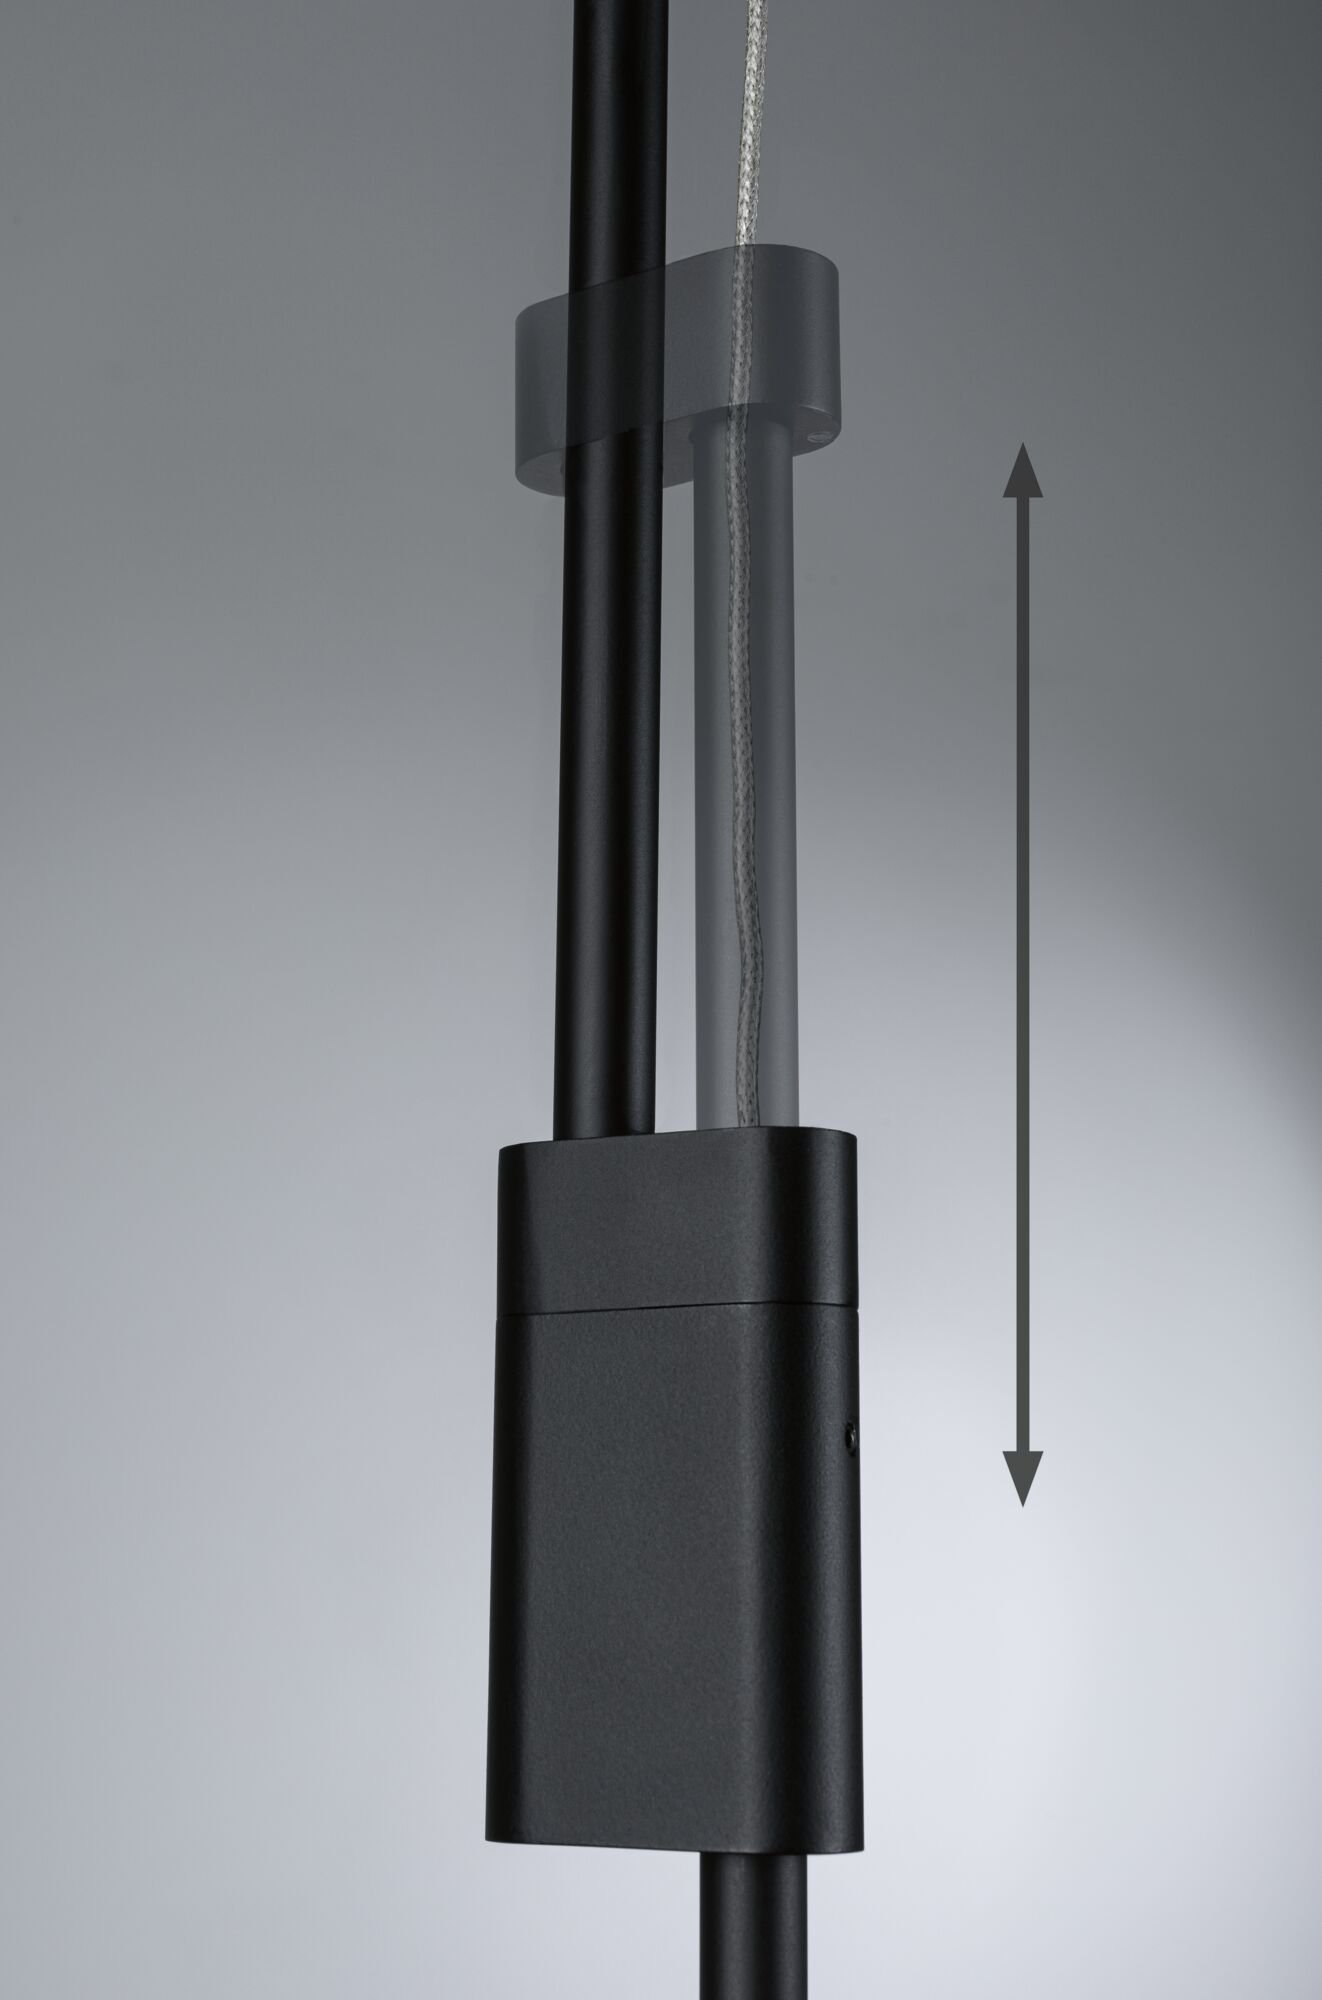 LED-hanglamp Smart Home Zigbee Puric Pane Effect 6x6 / 1x3W Zwart